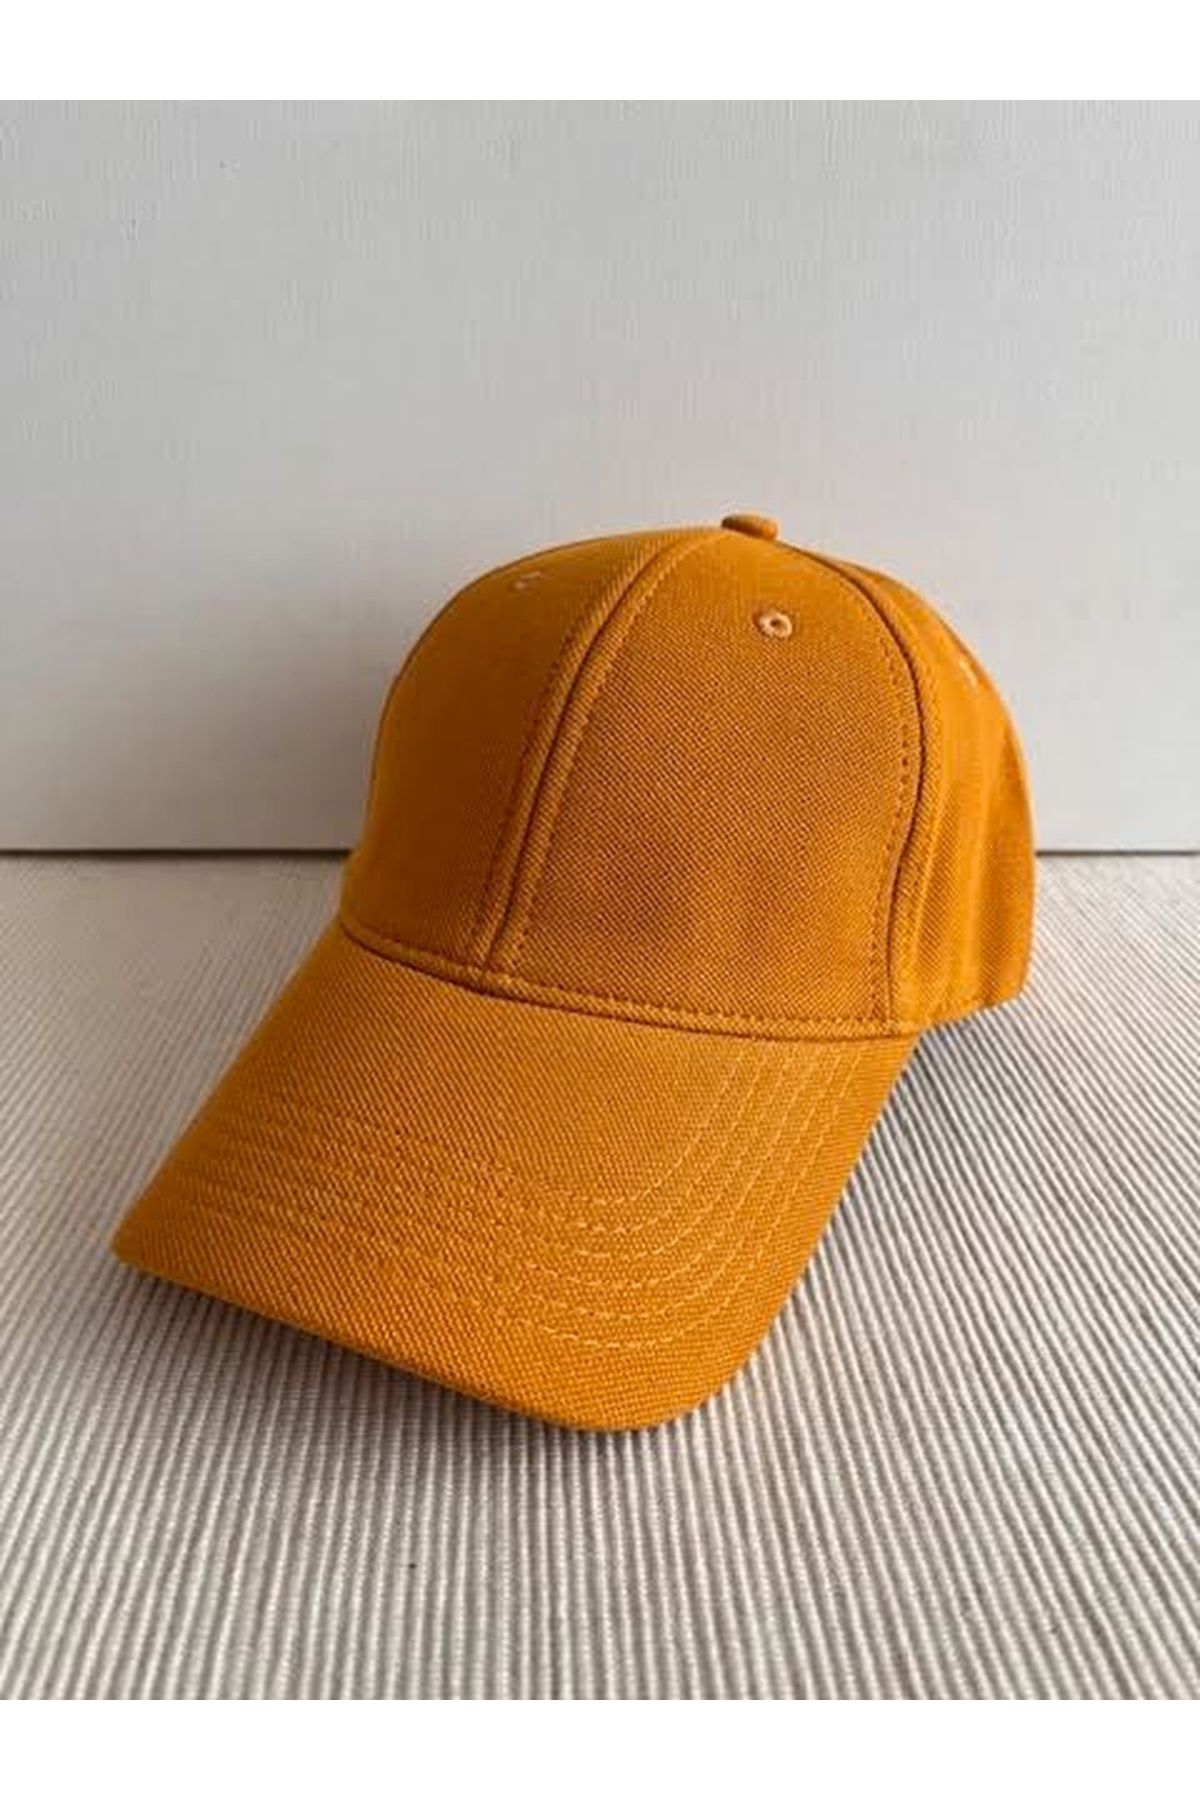 CosmoOutlet Düz Renk Pike Polo Kumaş Arkasından Ayarlanabilir Unisex Hardal Renk Şapka